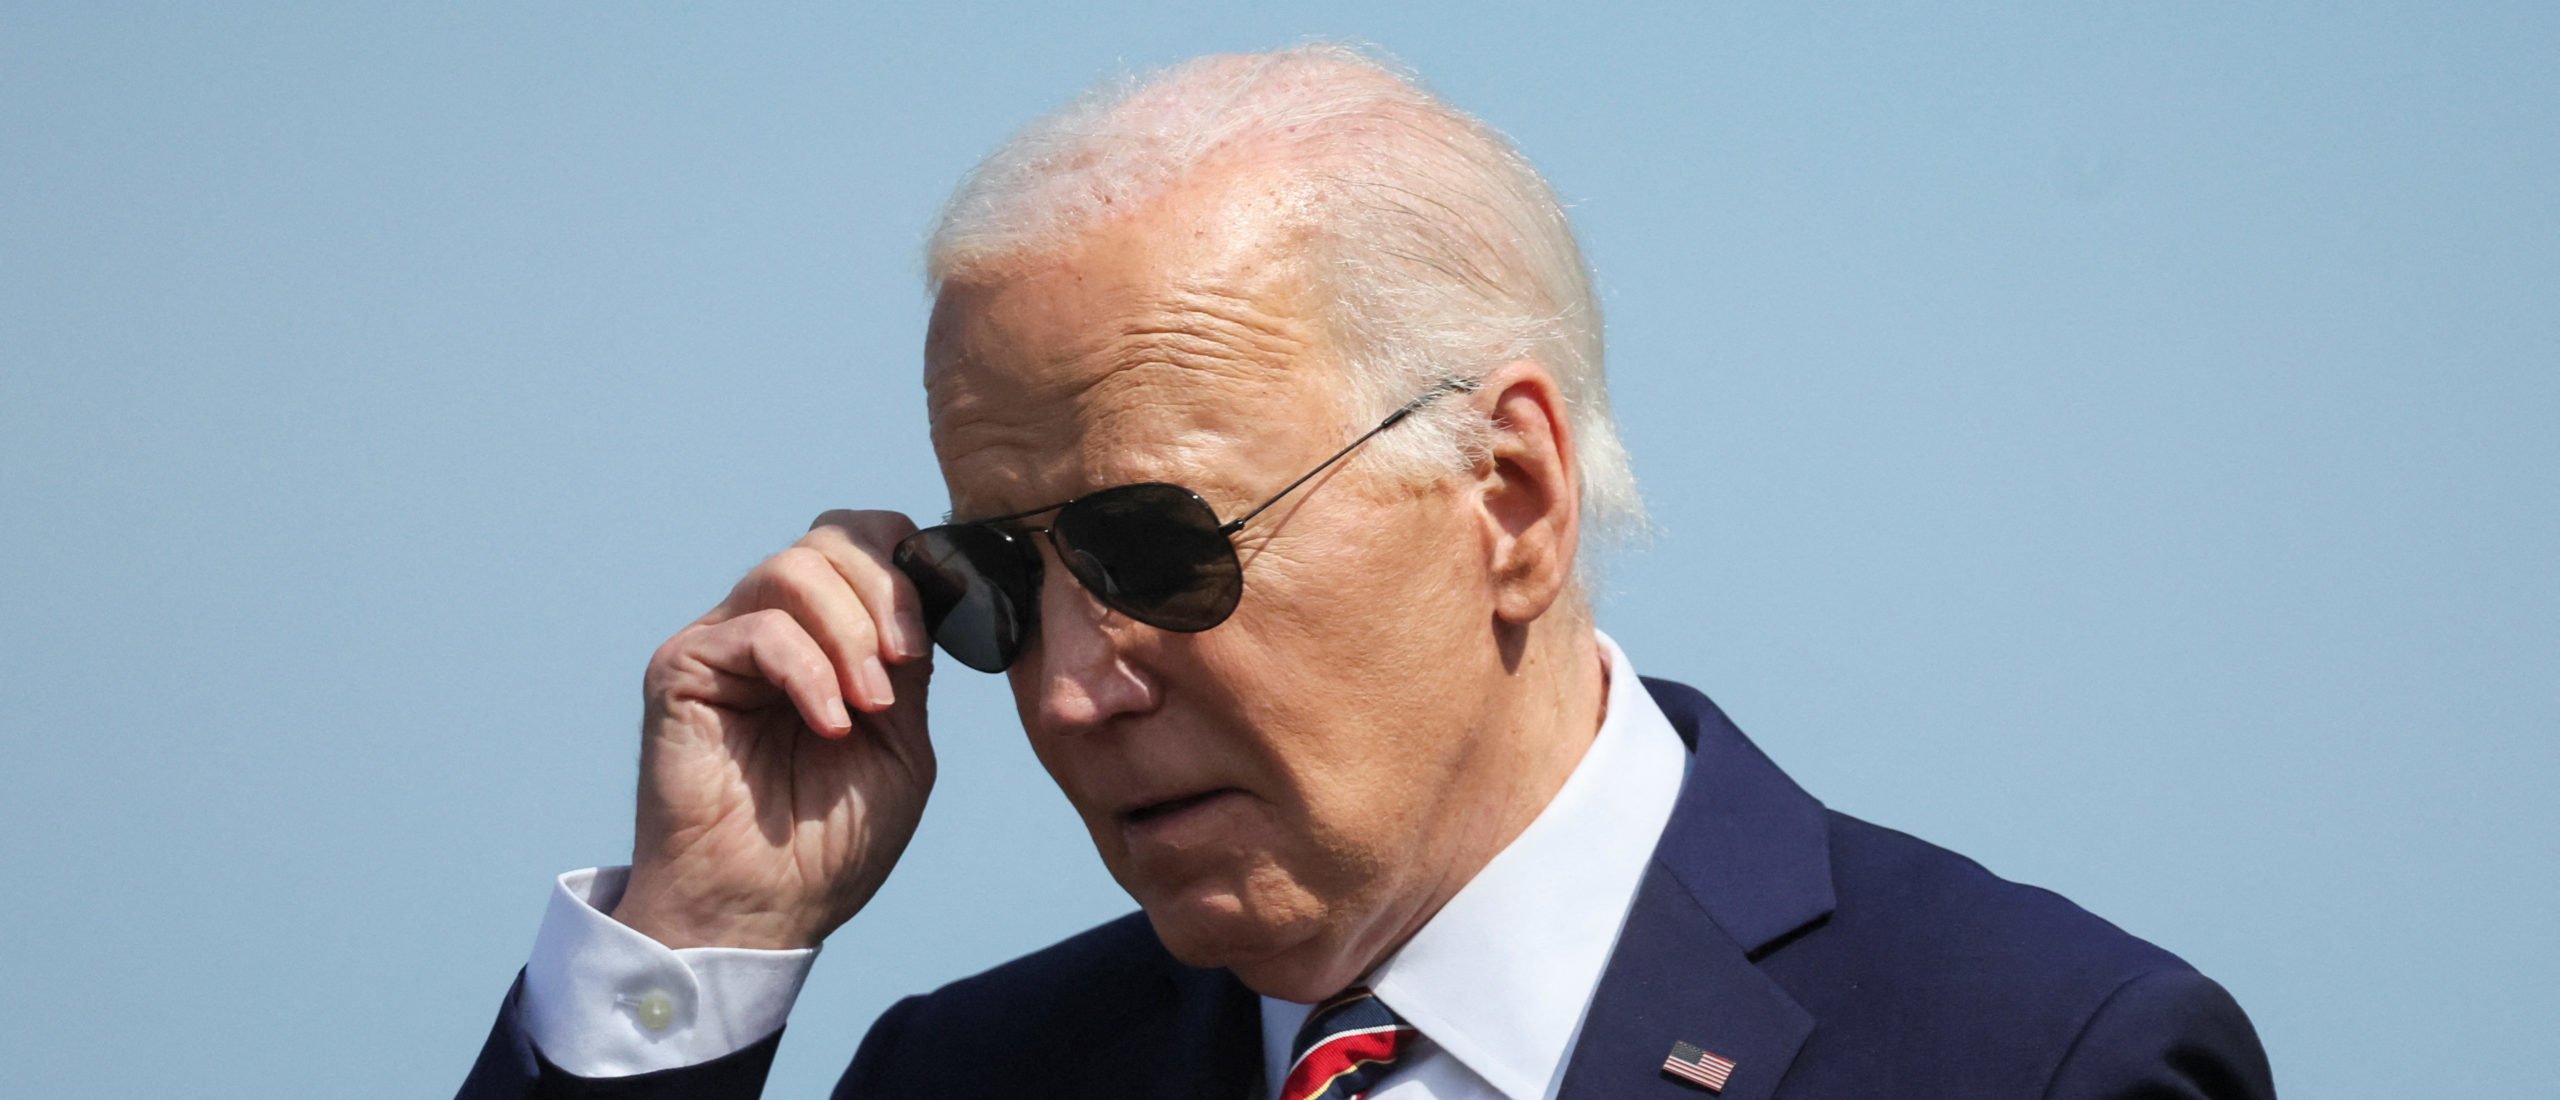 Le prochain grand cauchemar de Biden pourrait se préparer à la suite du scandale sexuel fédéral